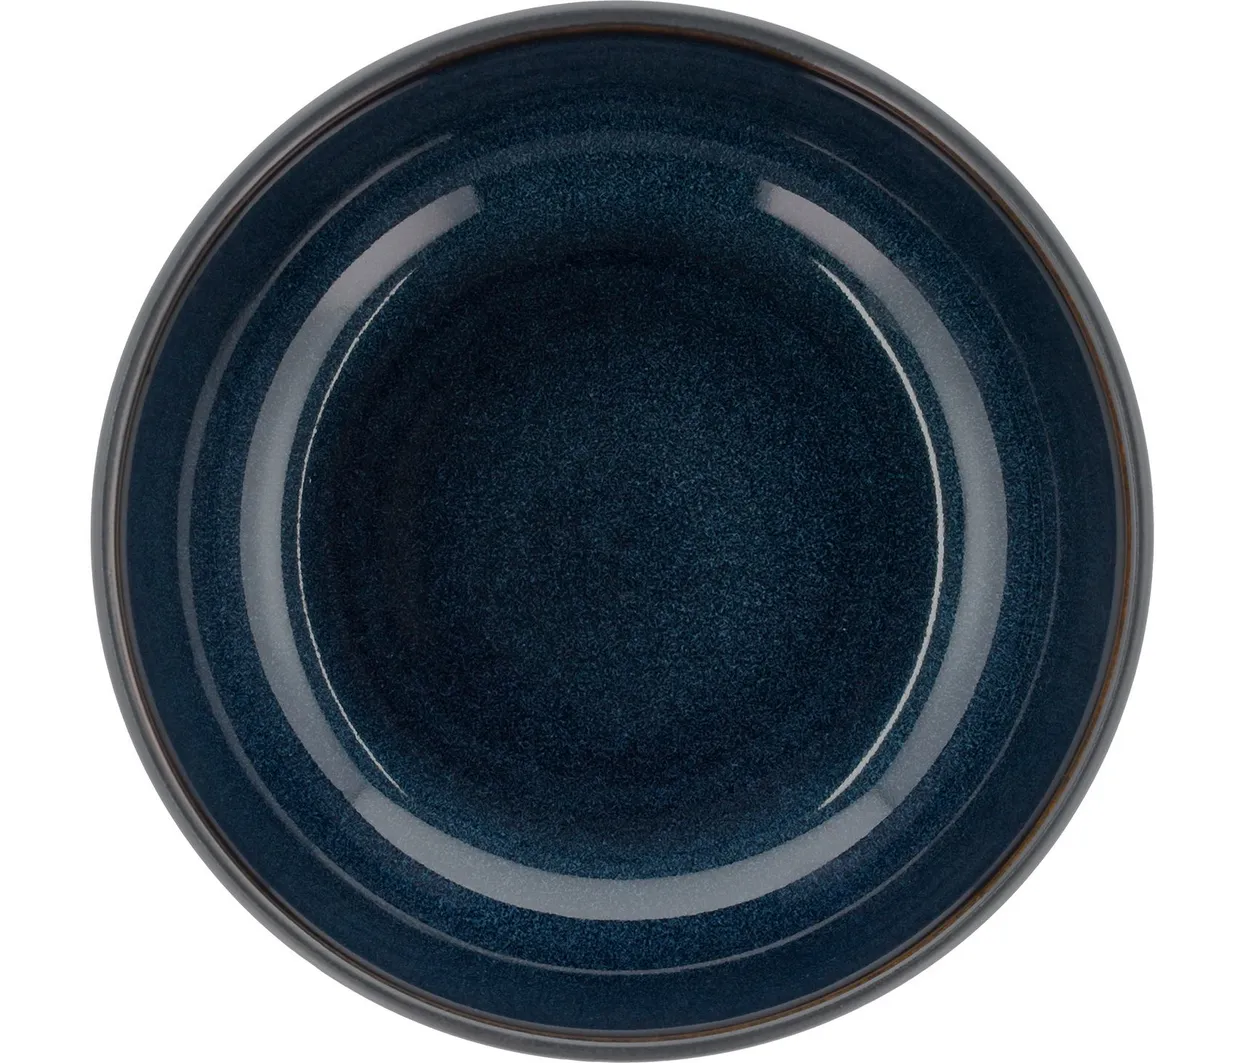 Schaal / pokébowl rond 18 cm - Zwart / Donkerblauw